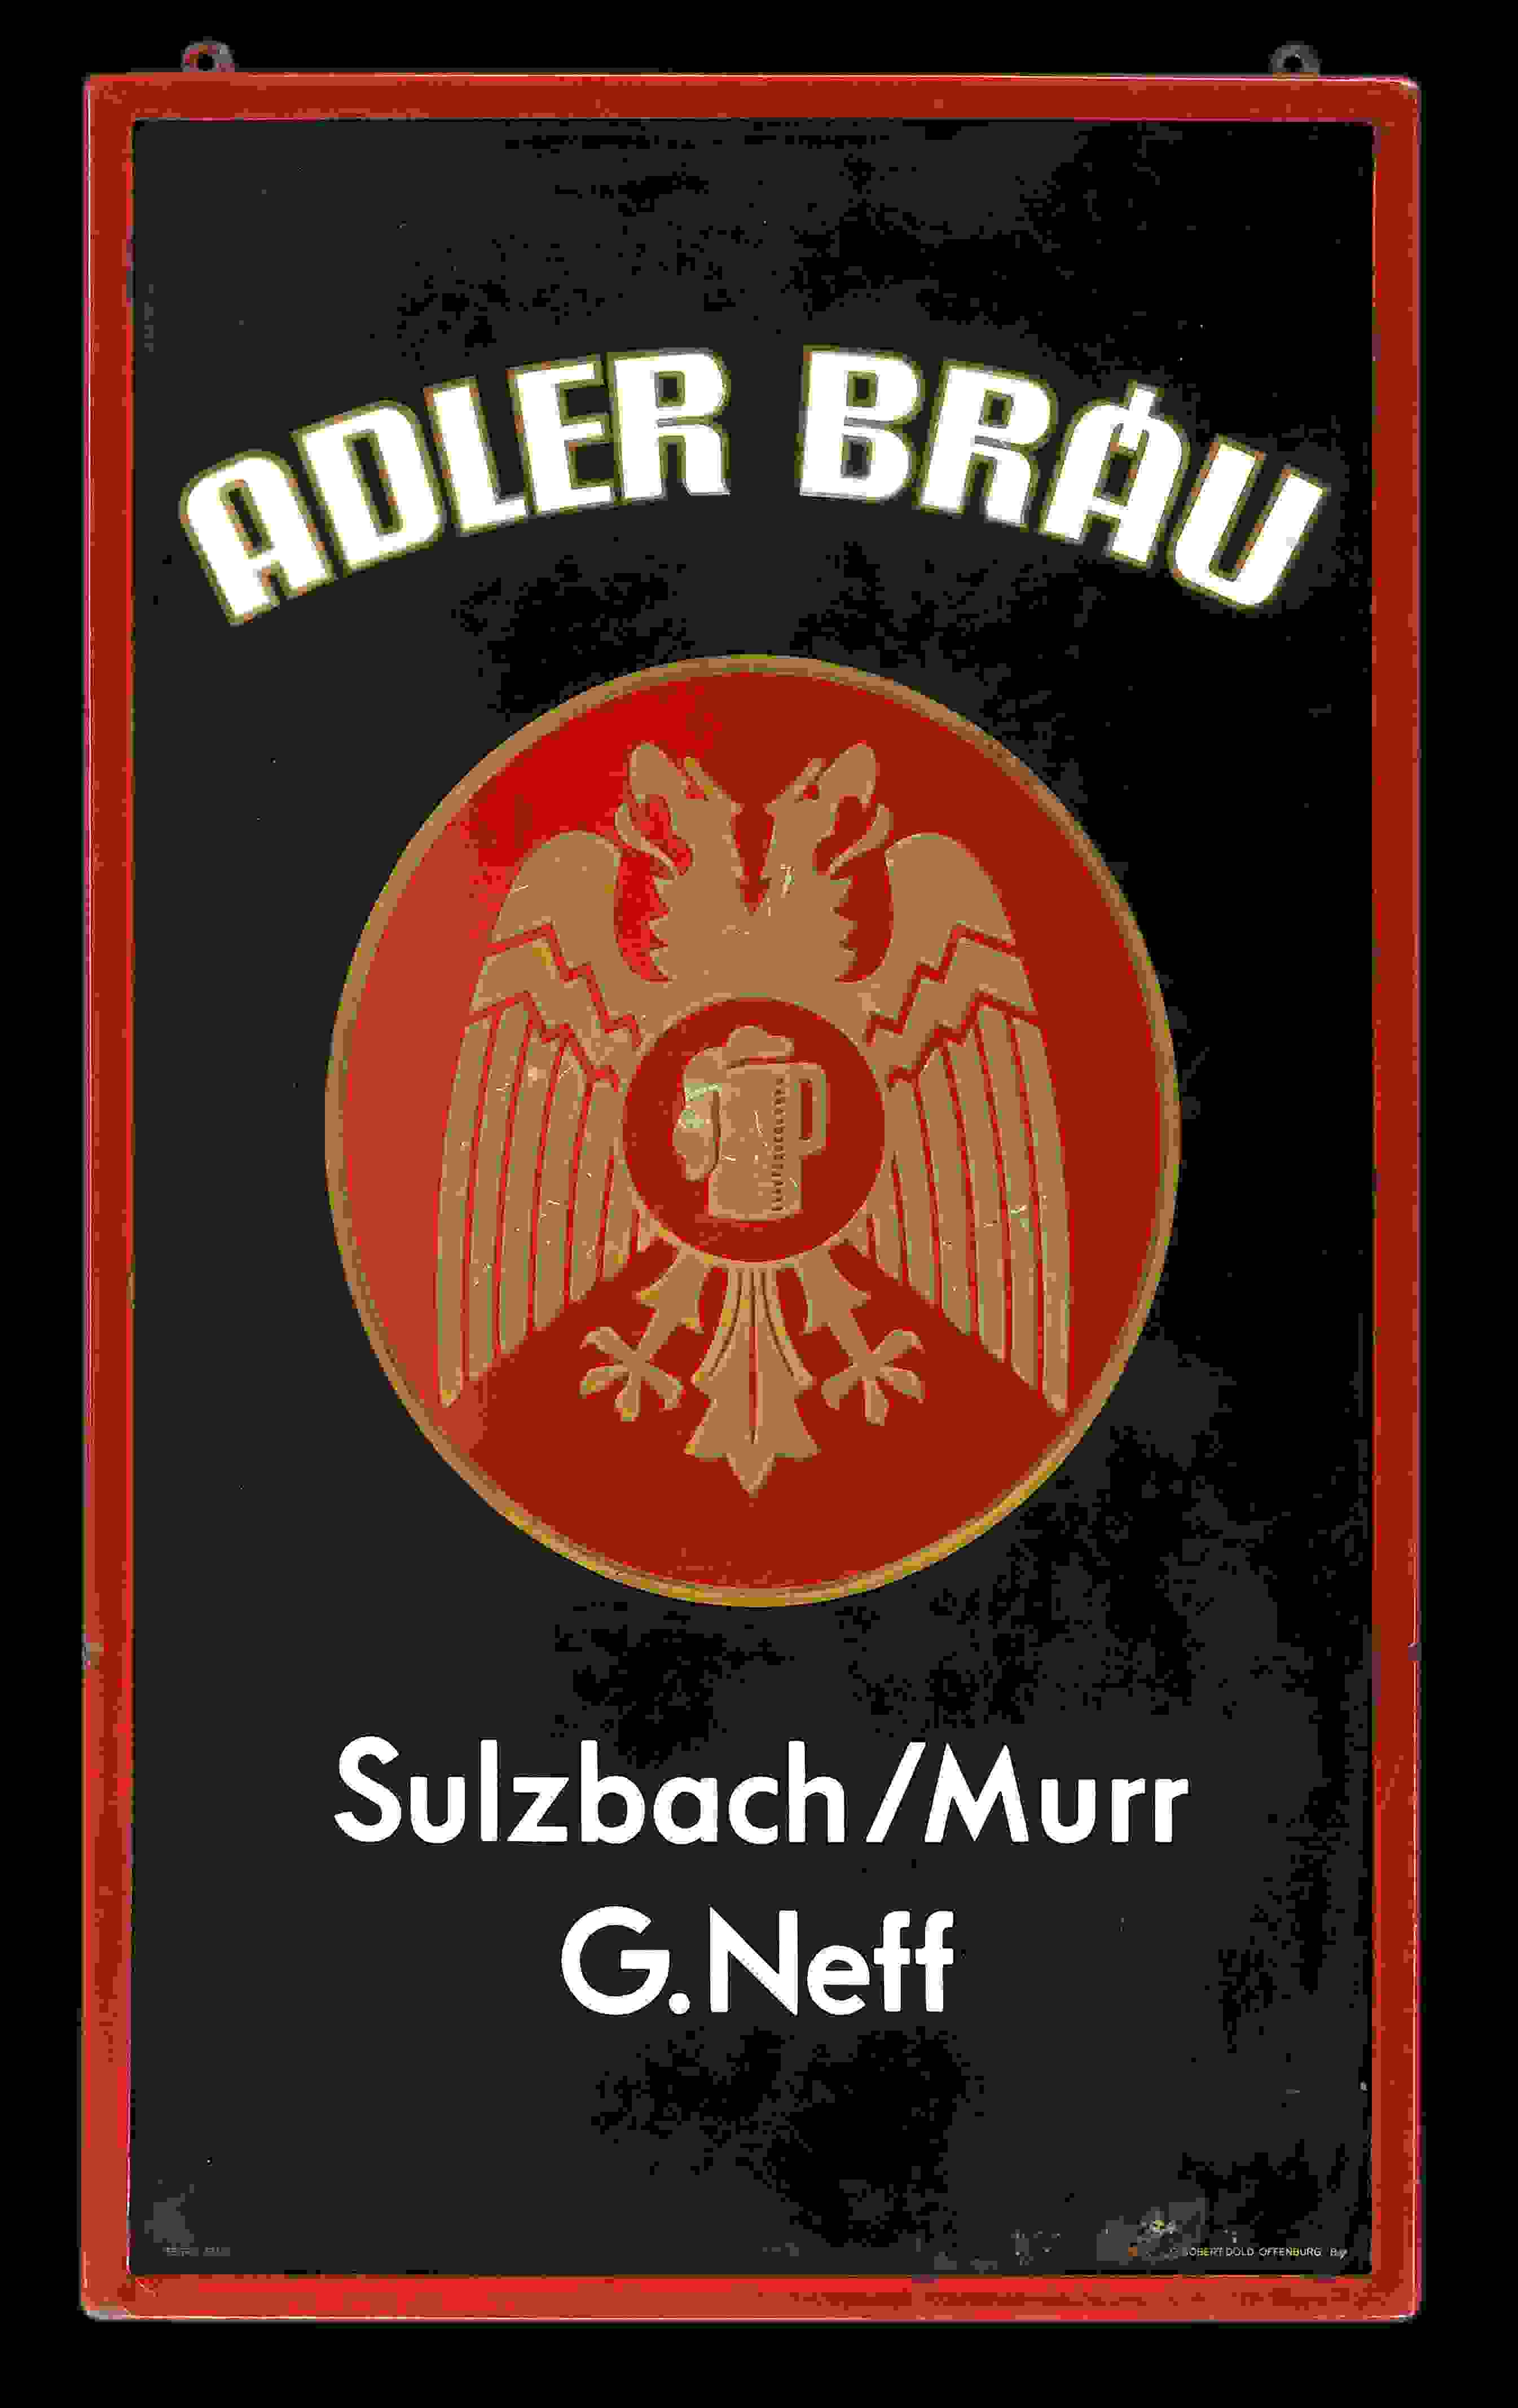 Adler Bräu Sulzbach 